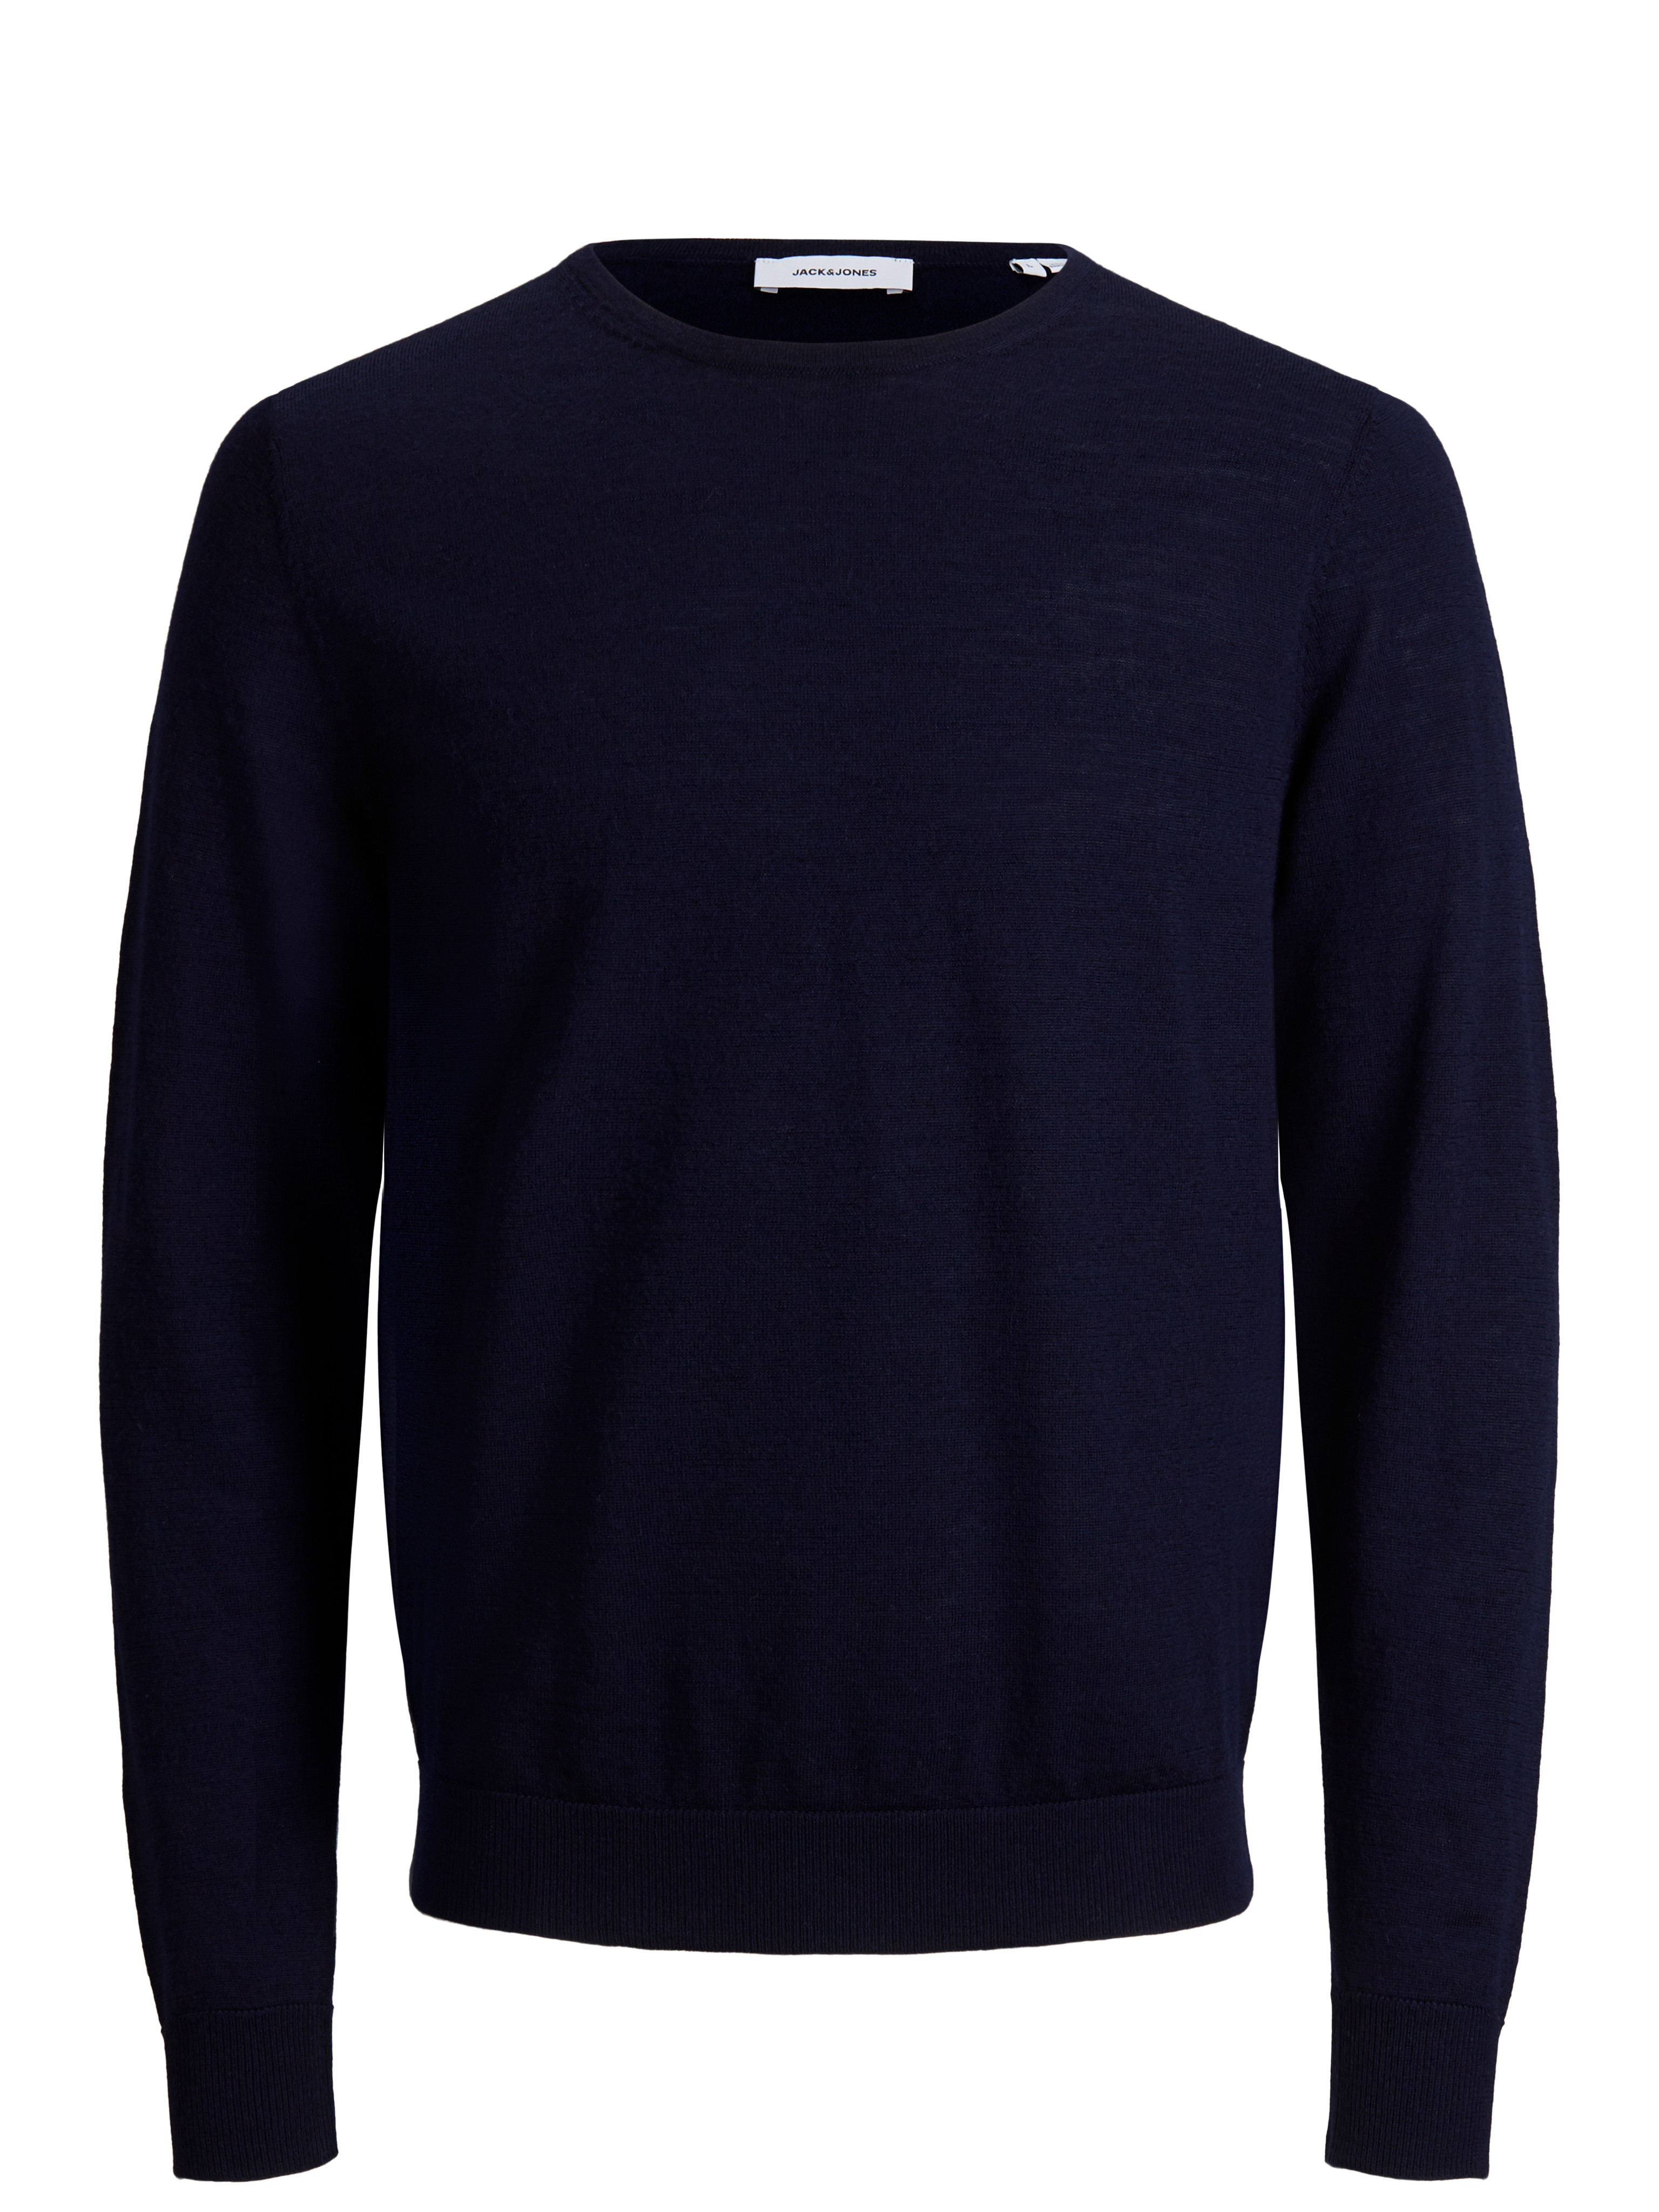 Pullover uomo in lana Merino, Blu, large image number 0